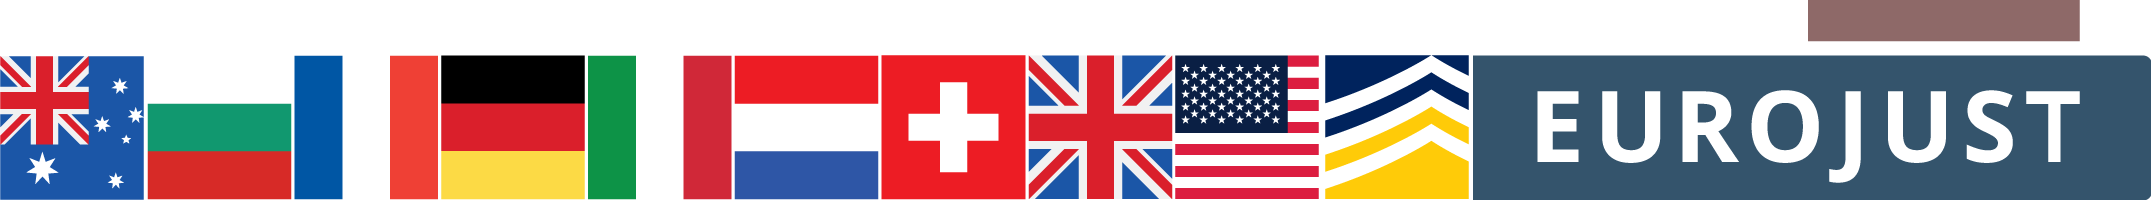 Flags of AUS, BG, FR, DE, IT, NL, CH, UK, USA, logos of Europol, Eurojust